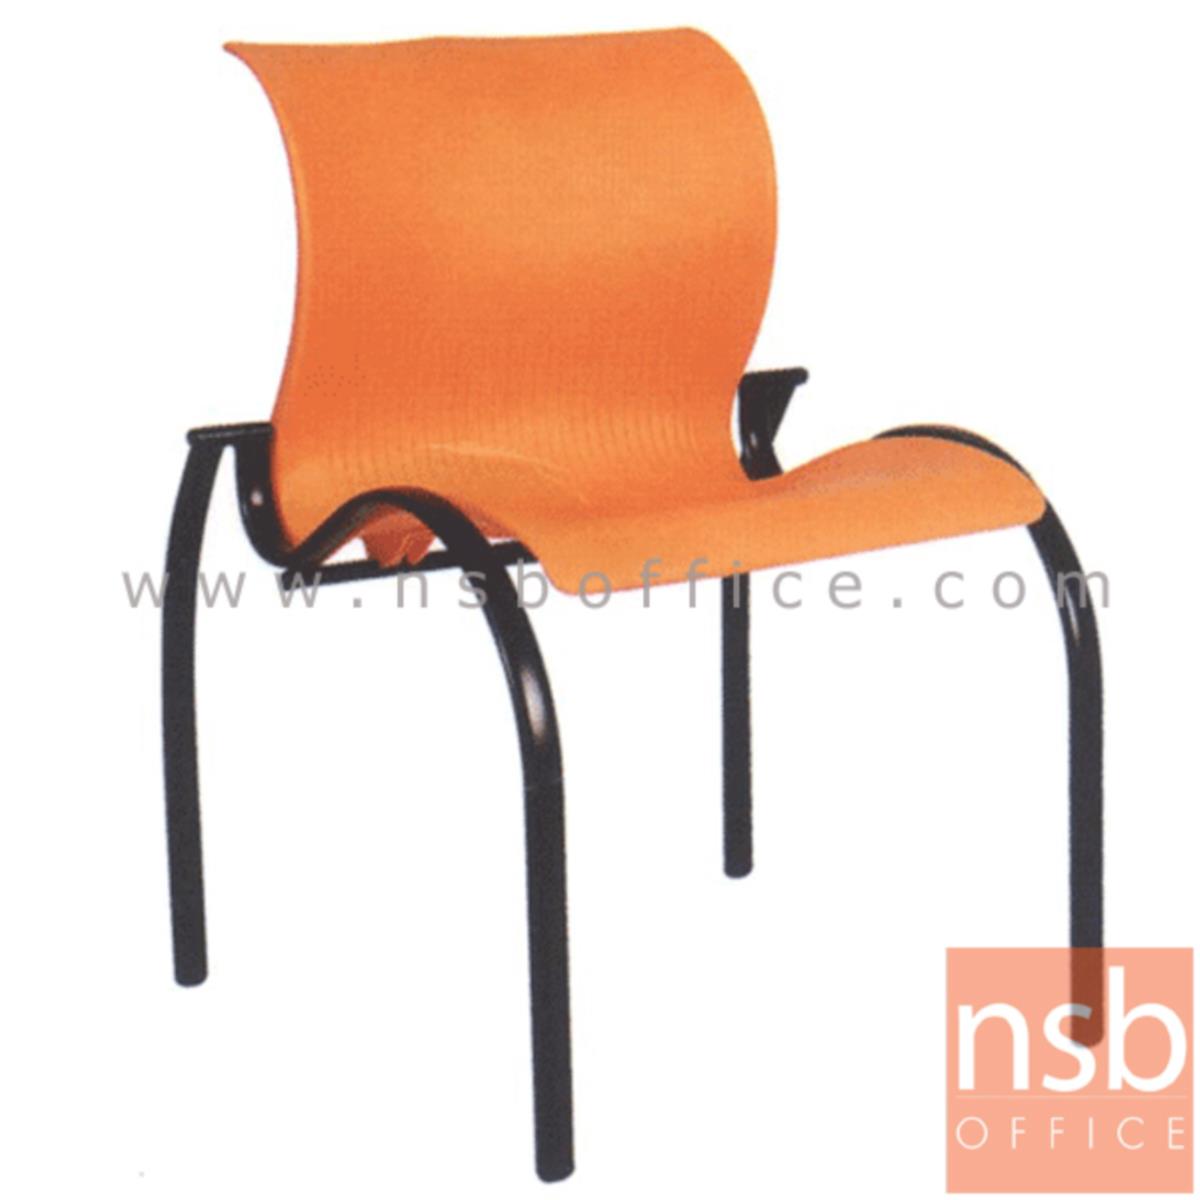 เก้าอี้อเนกประสงค์เฟรมโพลี่ รุ่น A4-501 ขาเหล็ก 